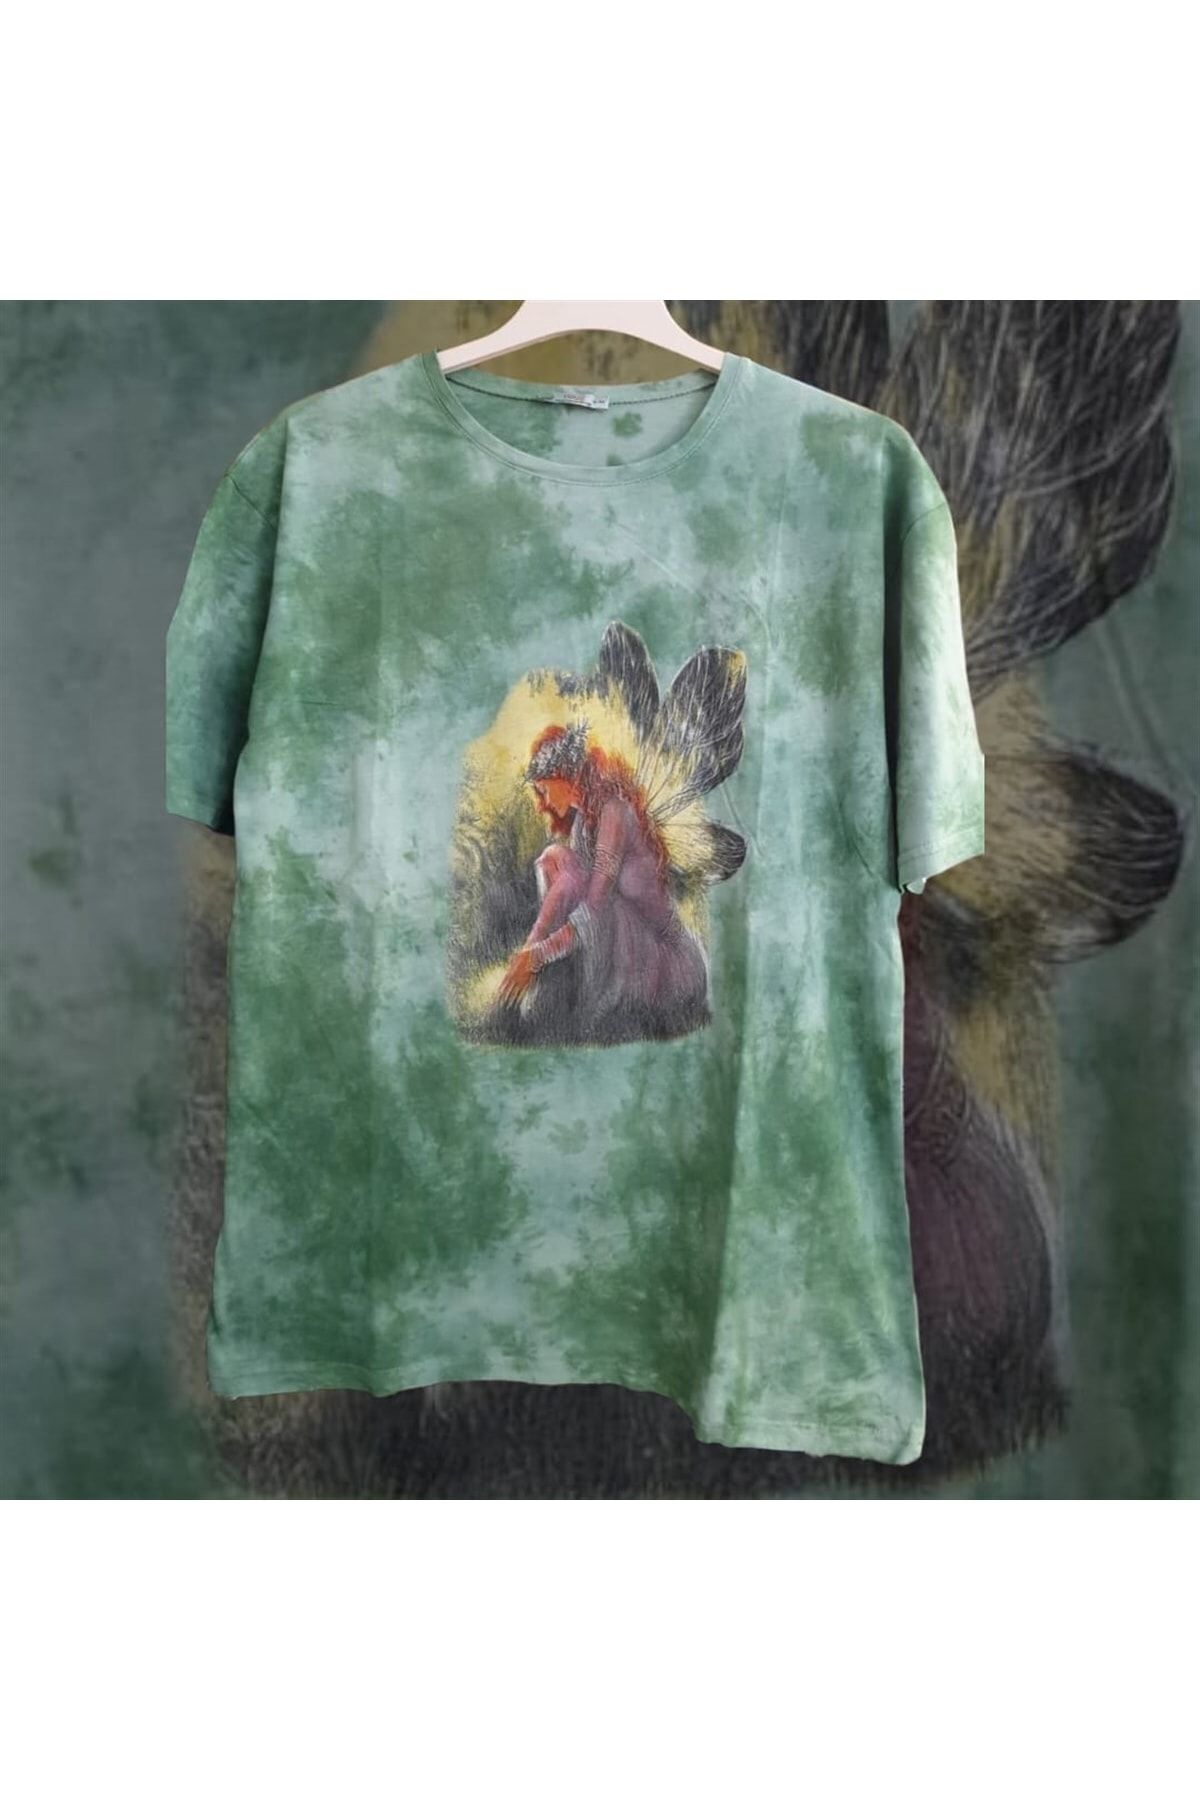 Yeşil Renk Yıkamalı Fairy Girl Oversize Kalıp T-shirt